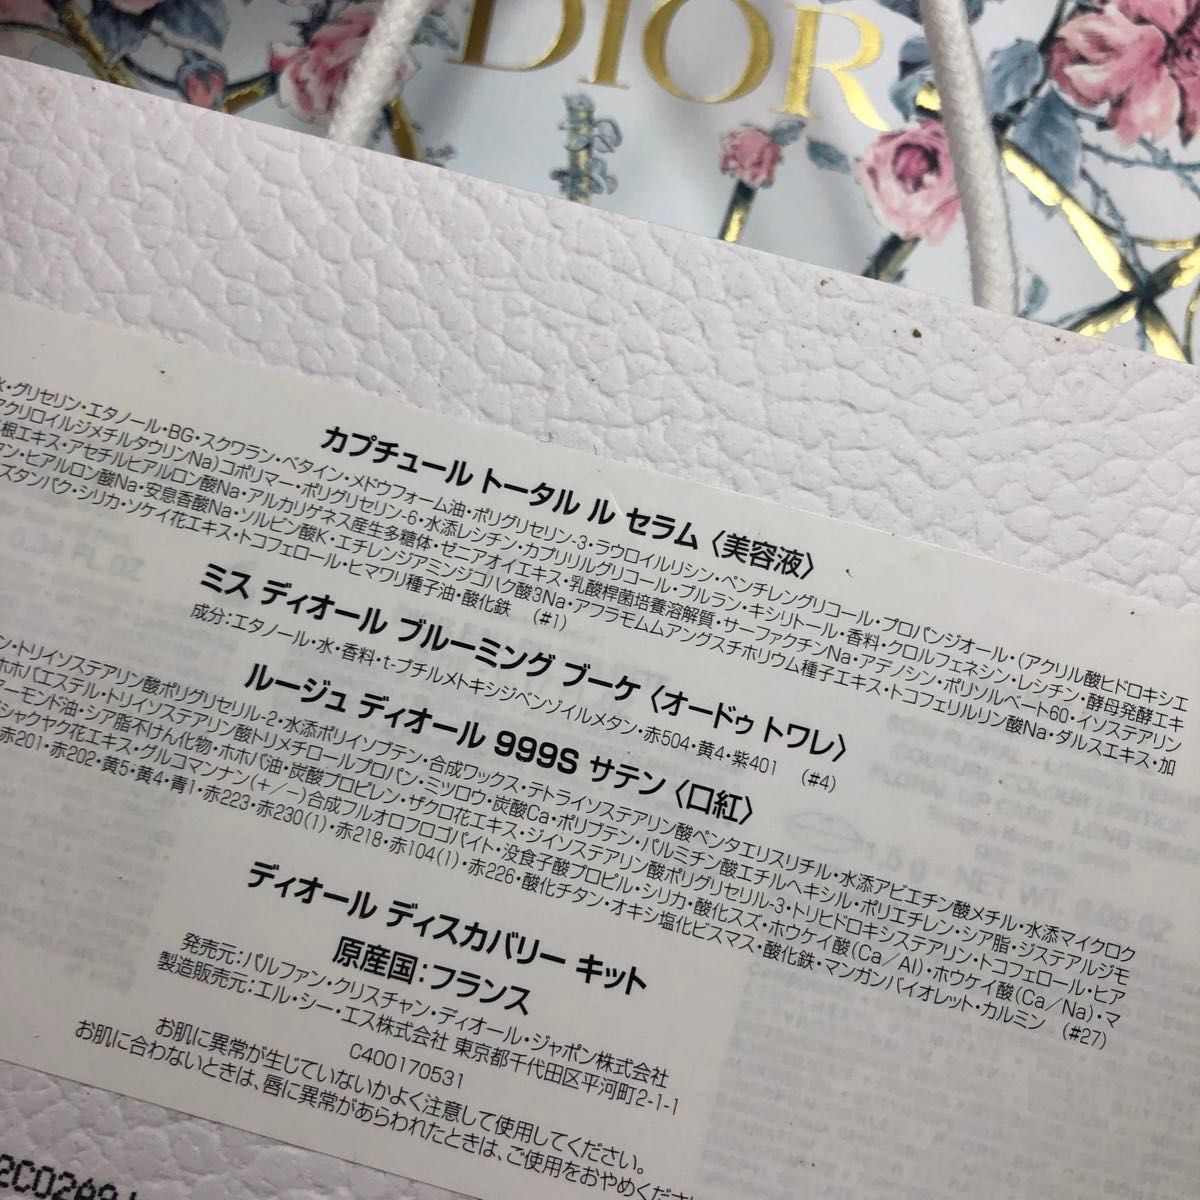 Dior ディオール DIOR ディスカバリー セット